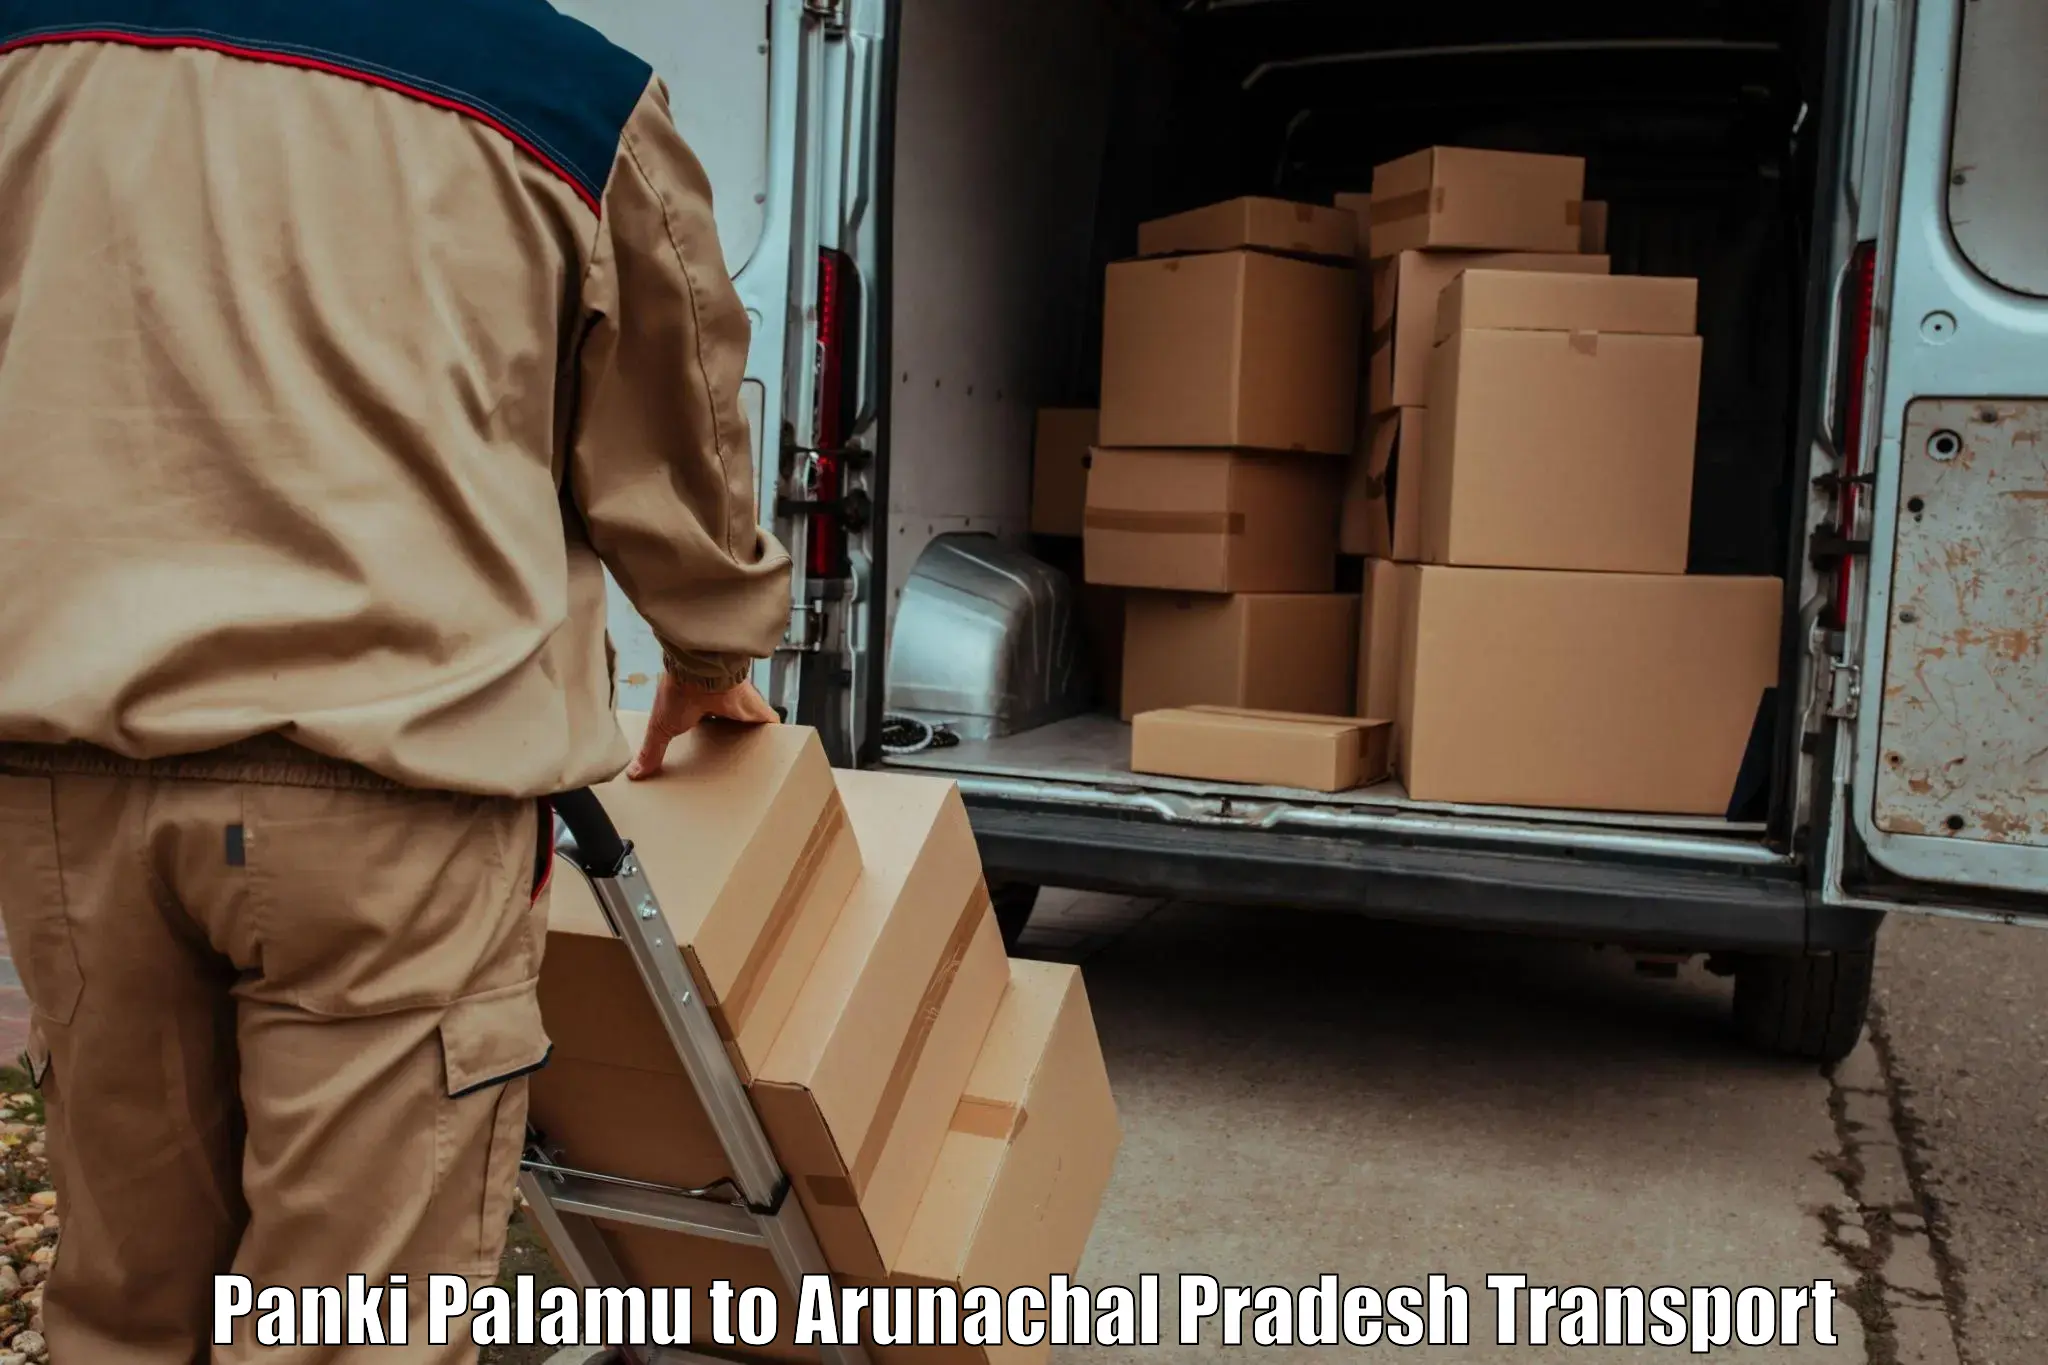 Domestic transport services Panki Palamu to Arunachal Pradesh